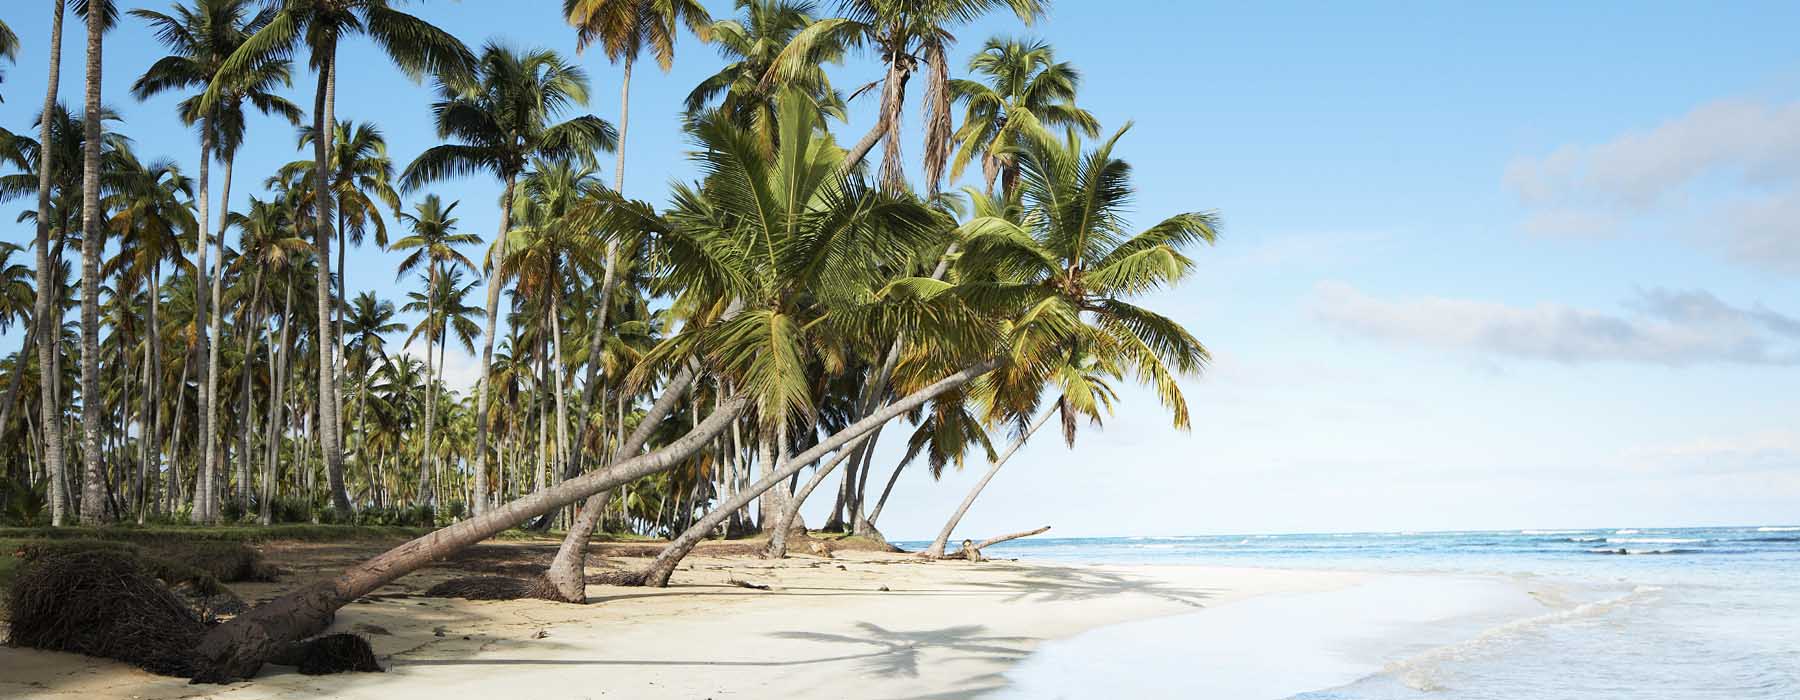 Vacances de février République dominicaine